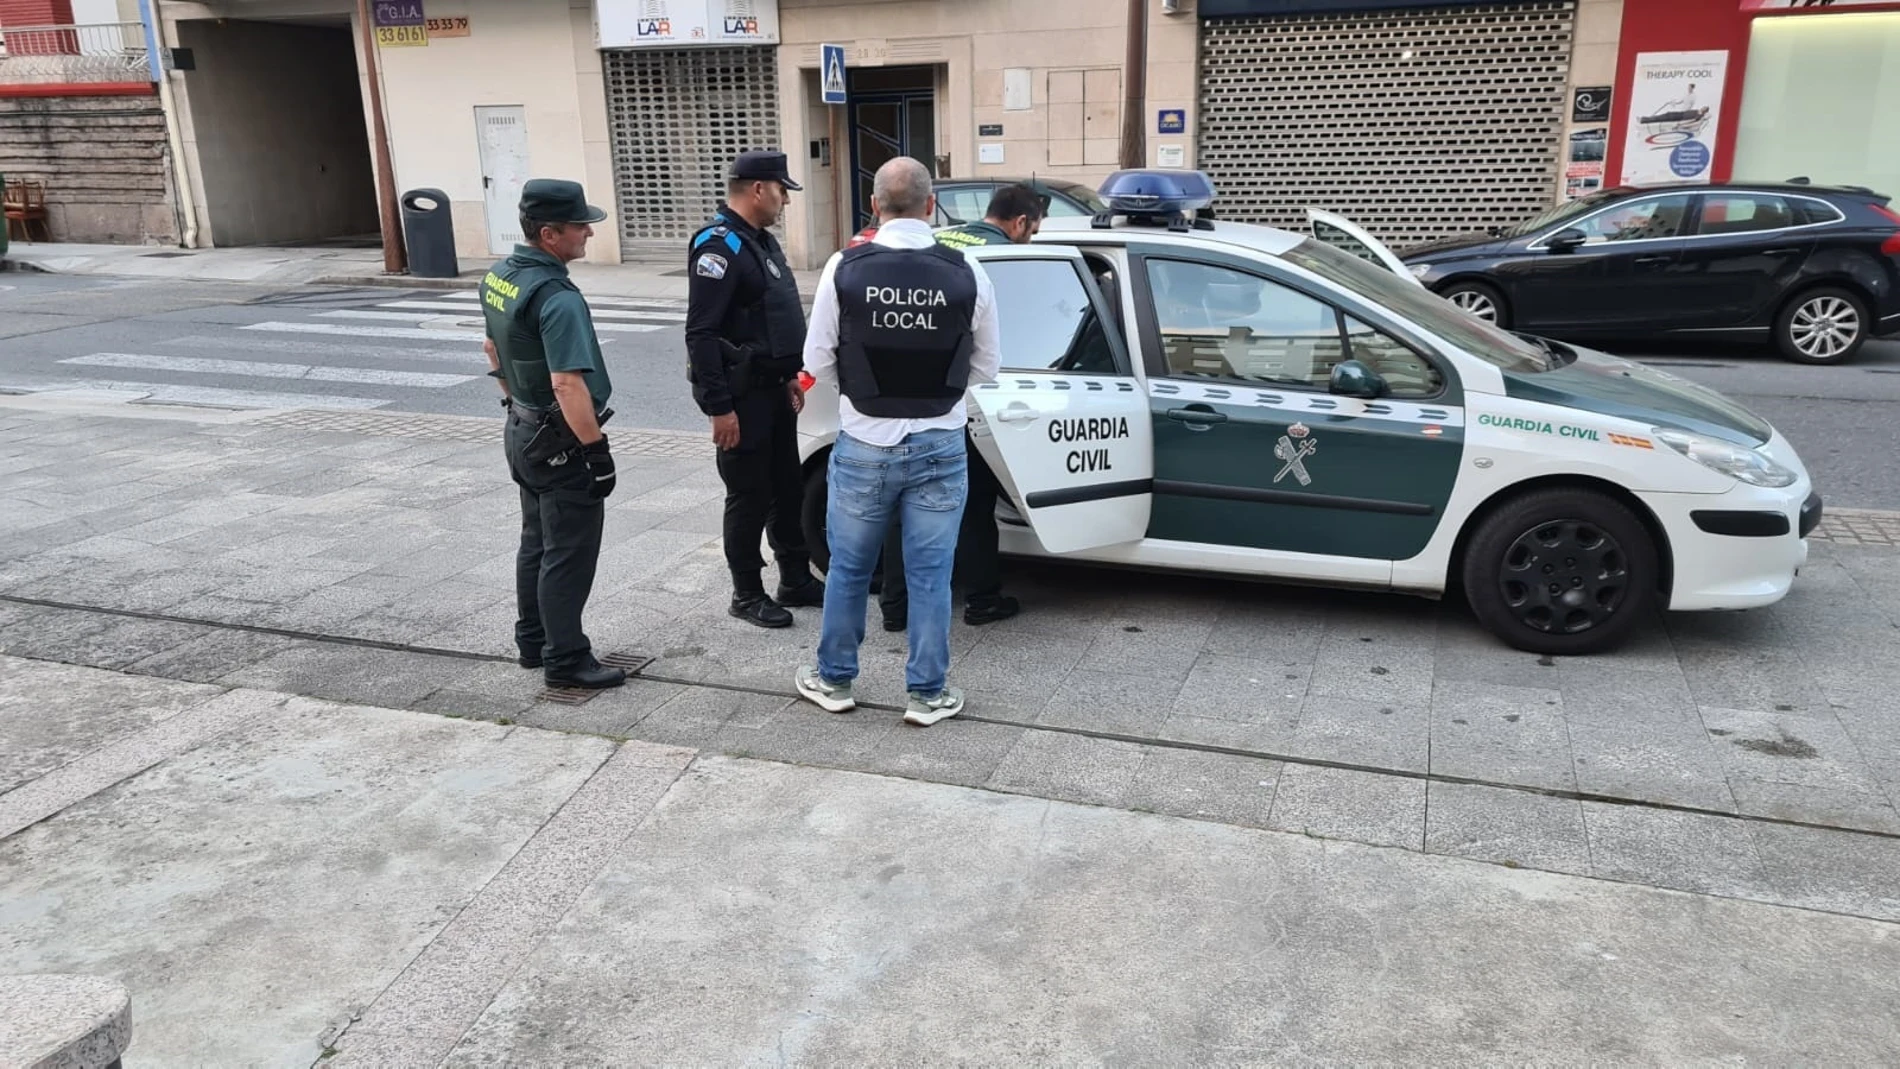 Liberada una mujer tras ser secuestrada por un hombre, que fue detenido en O Porriño, Pontevedra